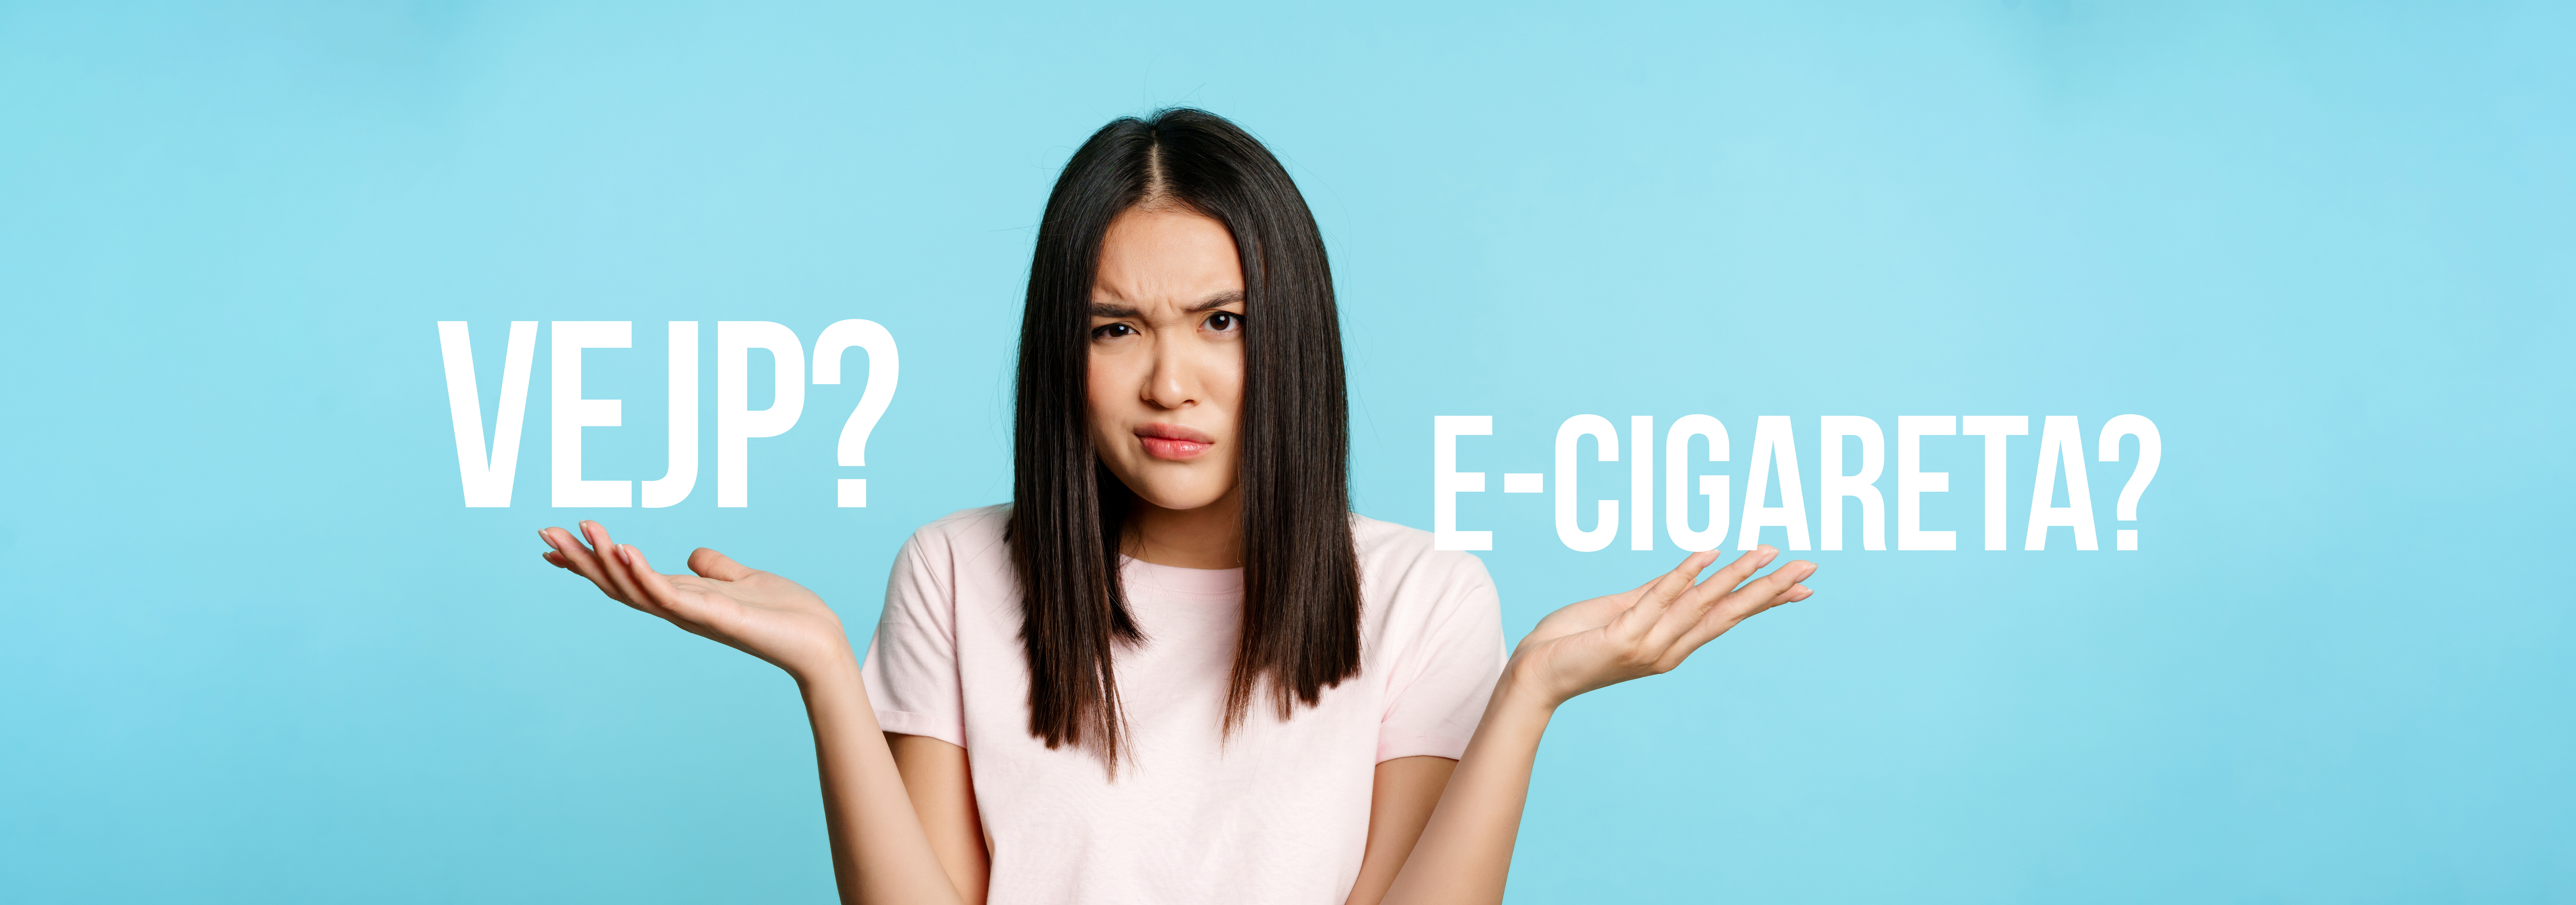 Šta je bolje vejp ili e cigareta? Kako odabrati pravo rešenje?	